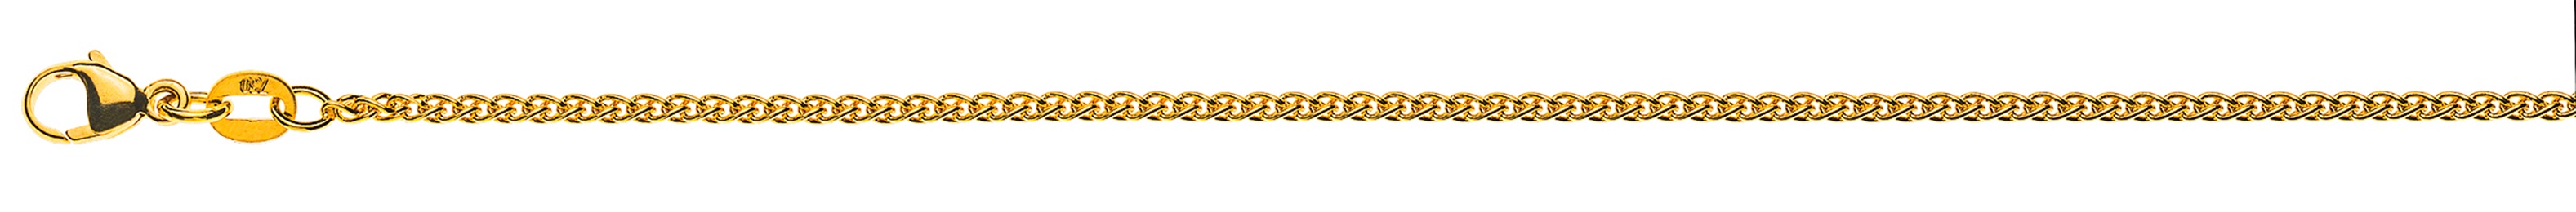 AURONOS Élégance Necklace yellow gold 14K cable chain 38cm 1.6mm